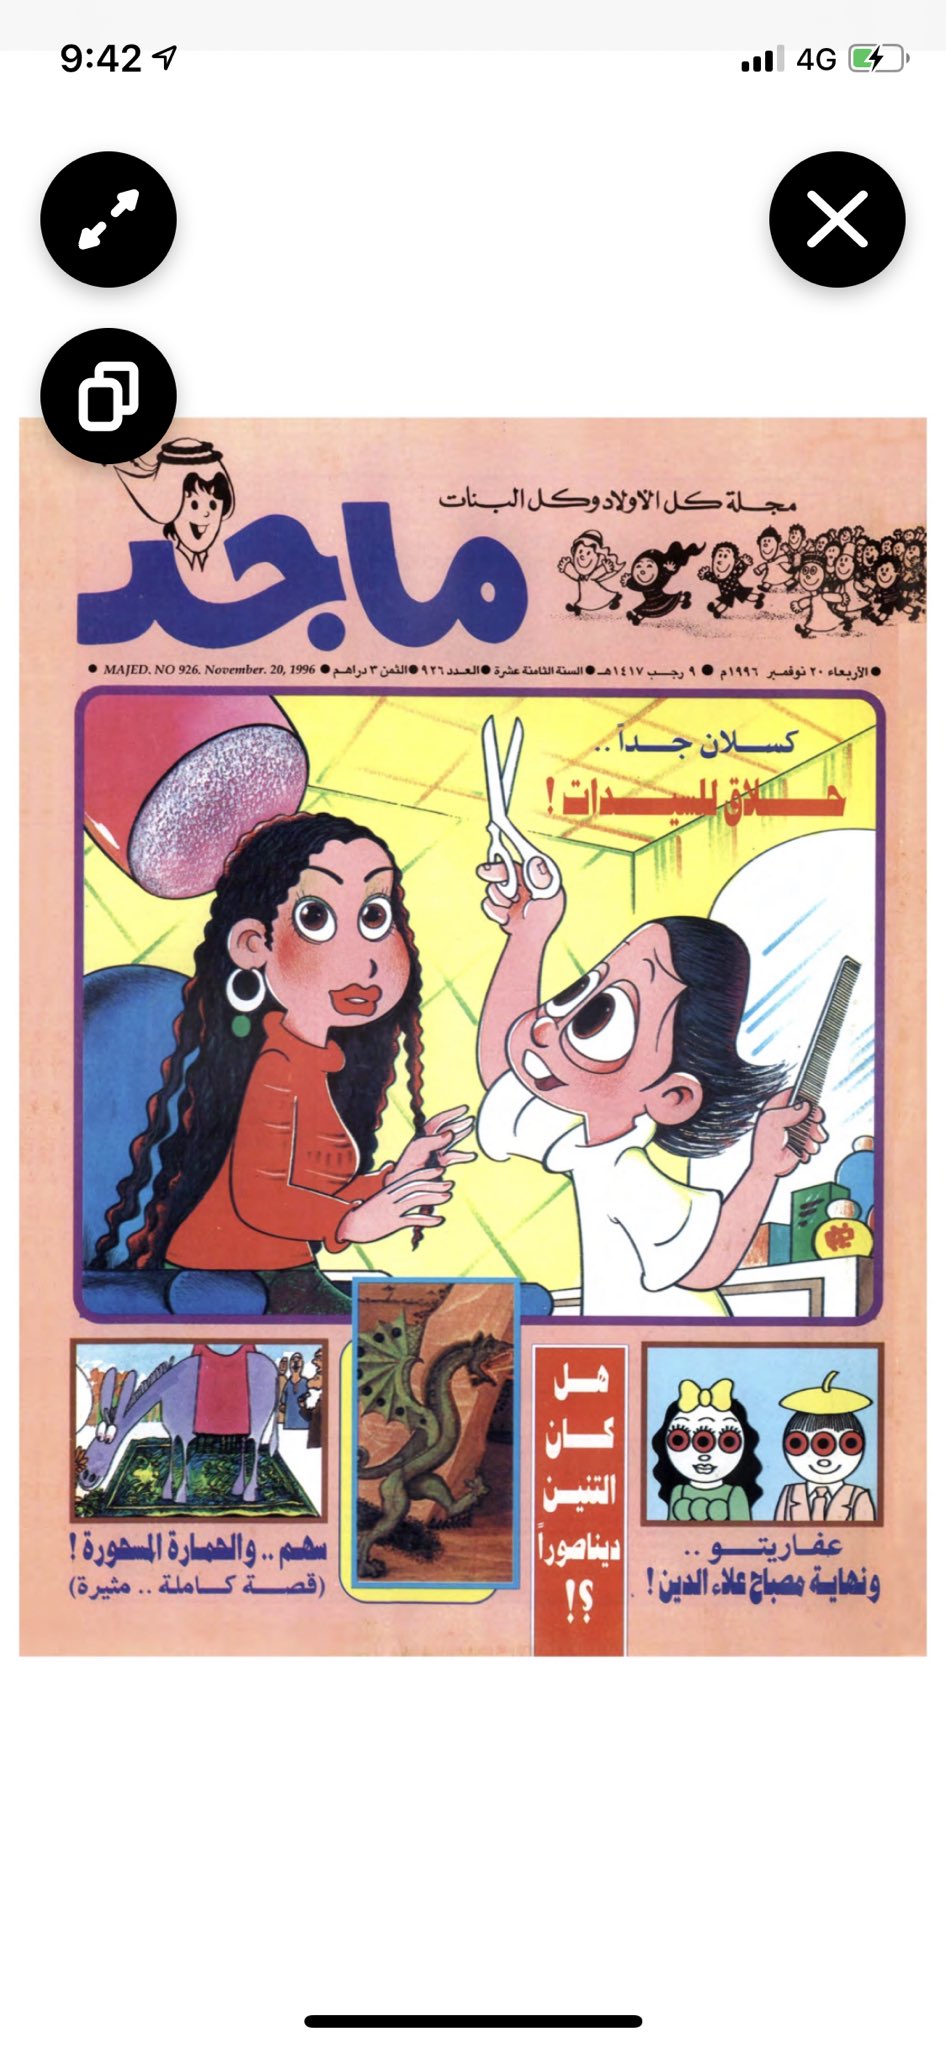 محمد حسن المرزوقي On Twitter قامت مجلة ماجد برفع أعداد قديمة من المجلة على تطبيقها ومن ضمنها أحد الأعداد الصادرة في عام ١٩٩٦ وهو العدد الذي نشرت فيه آخر لوحاتي الفنية قبل